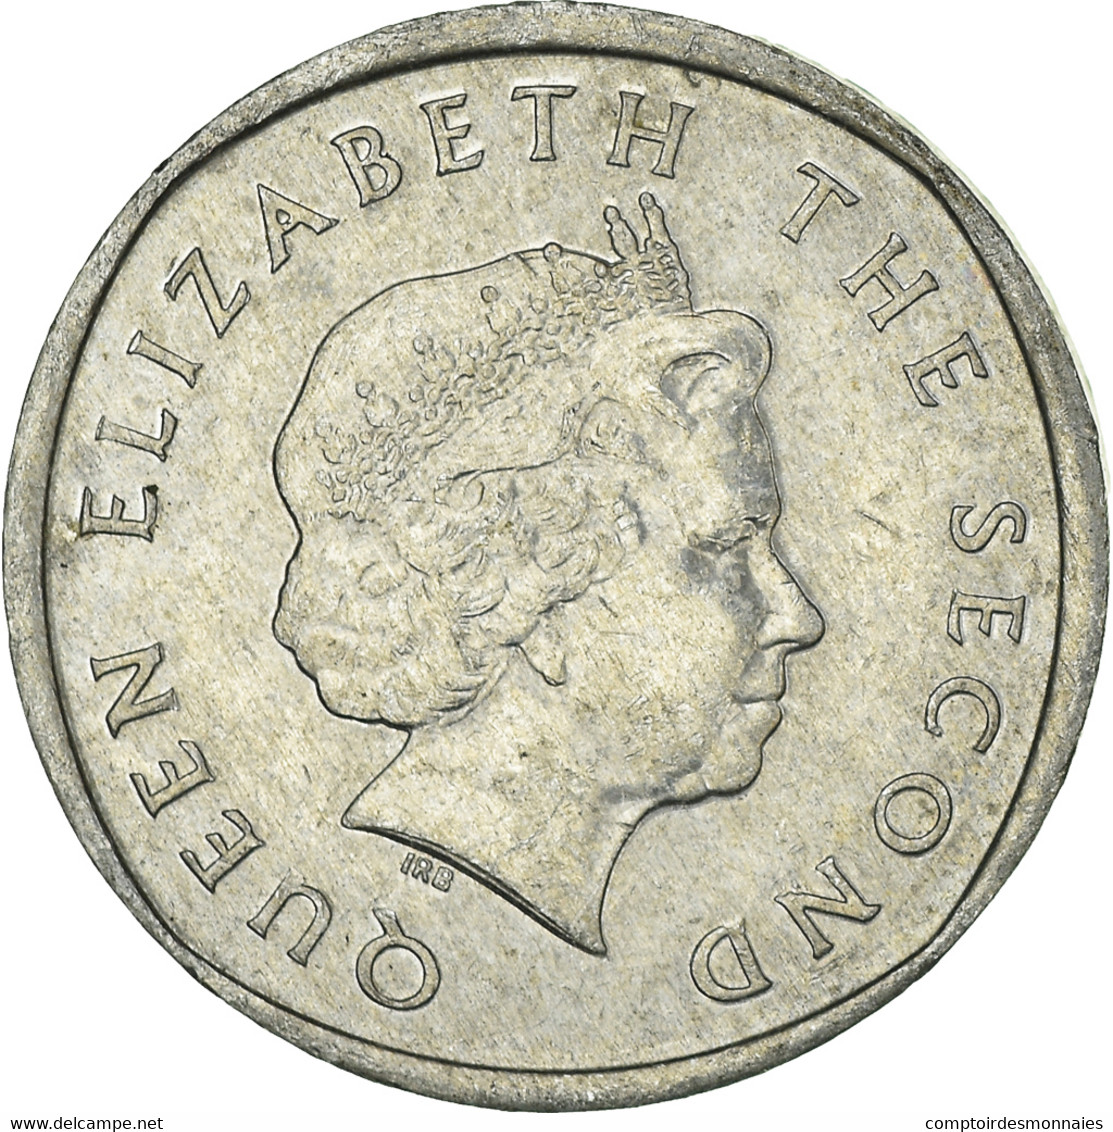 Monnaie, Etats Des Caraibes Orientales, 2 Cents, 2008 - East Caribbean States